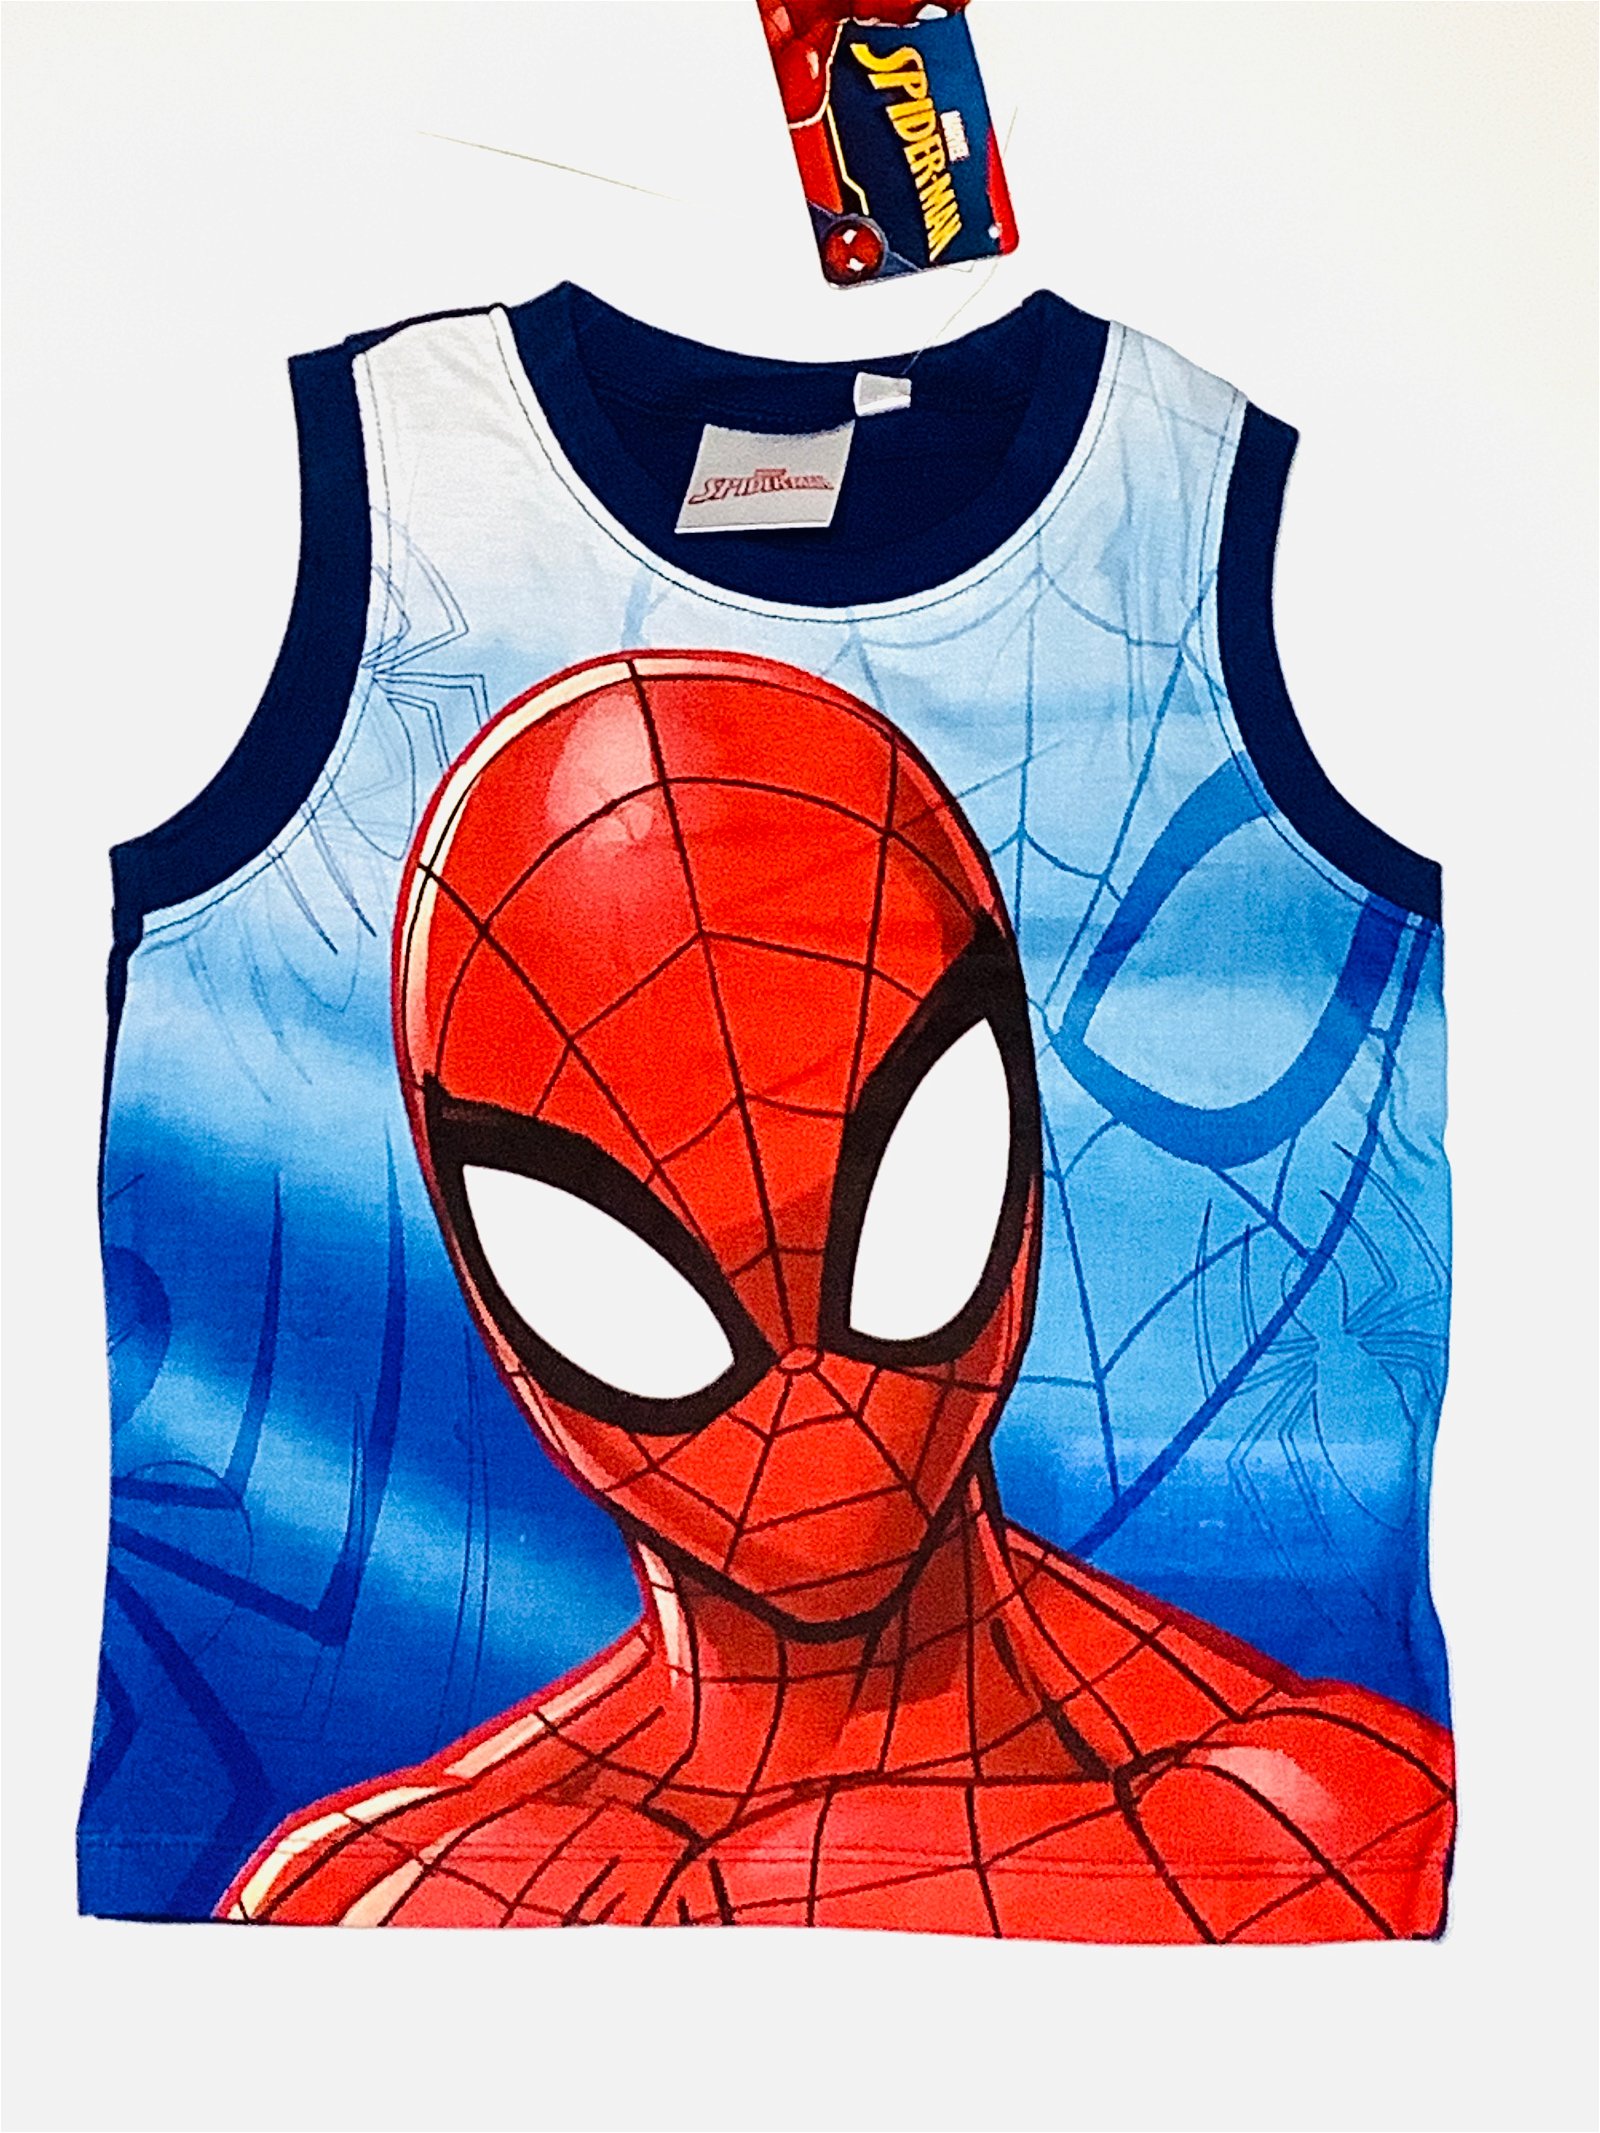 Afwijzen Pijlpunt surfen Heel veel nieuwe Spiderman kleding vanaf €6,95